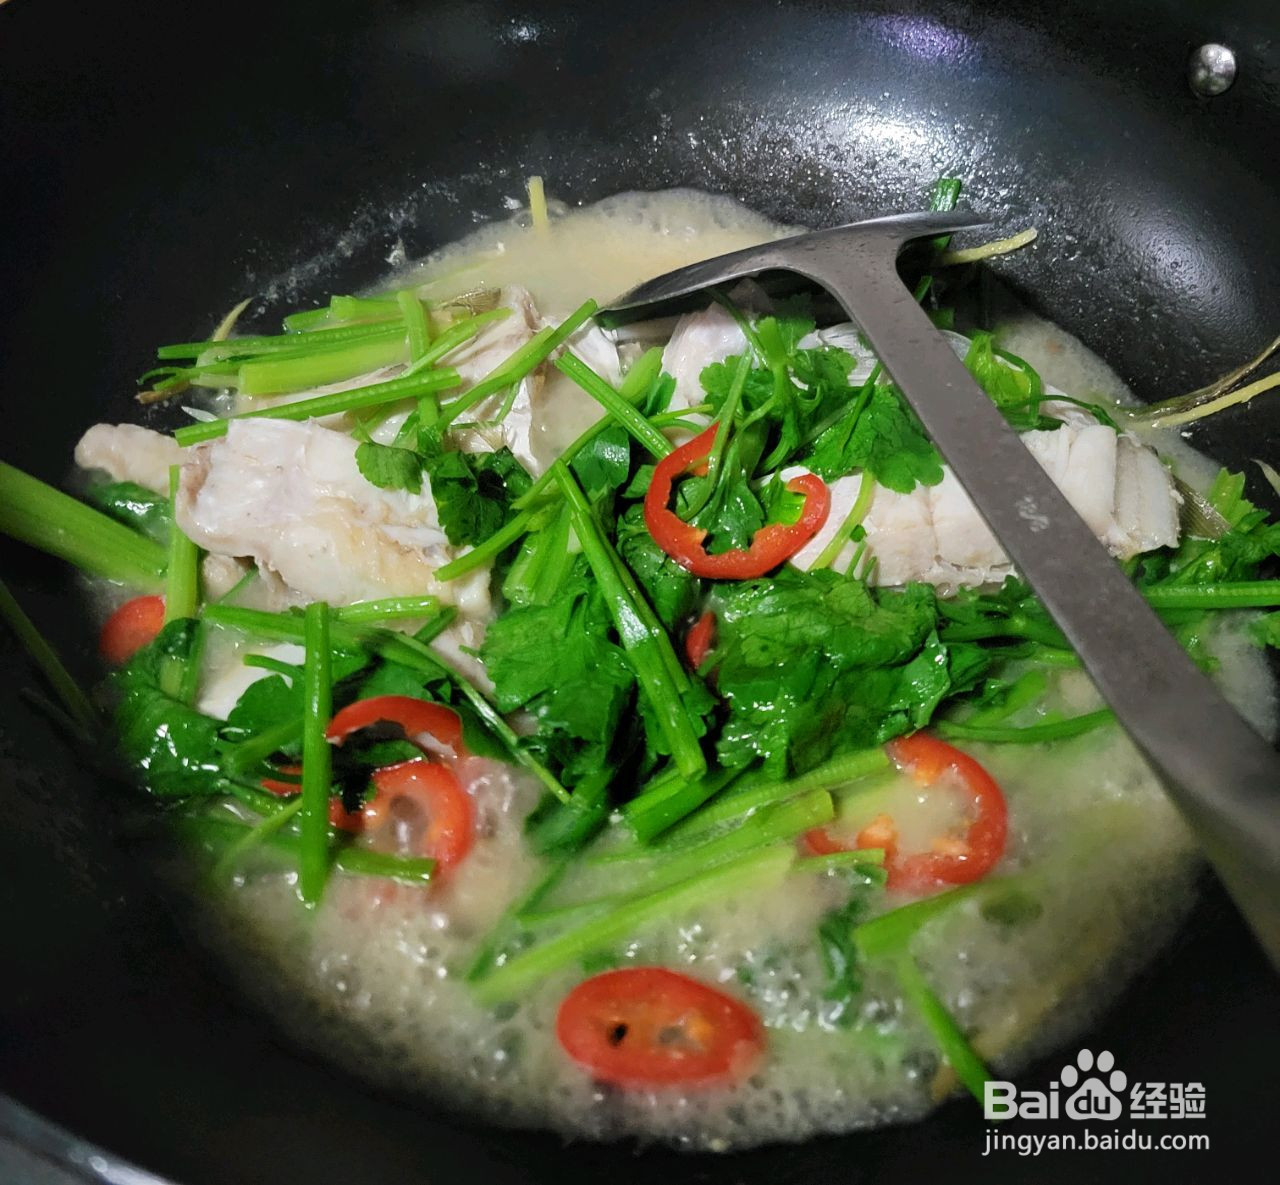 姜葱香芹焖煮大剥皮鱼的做法